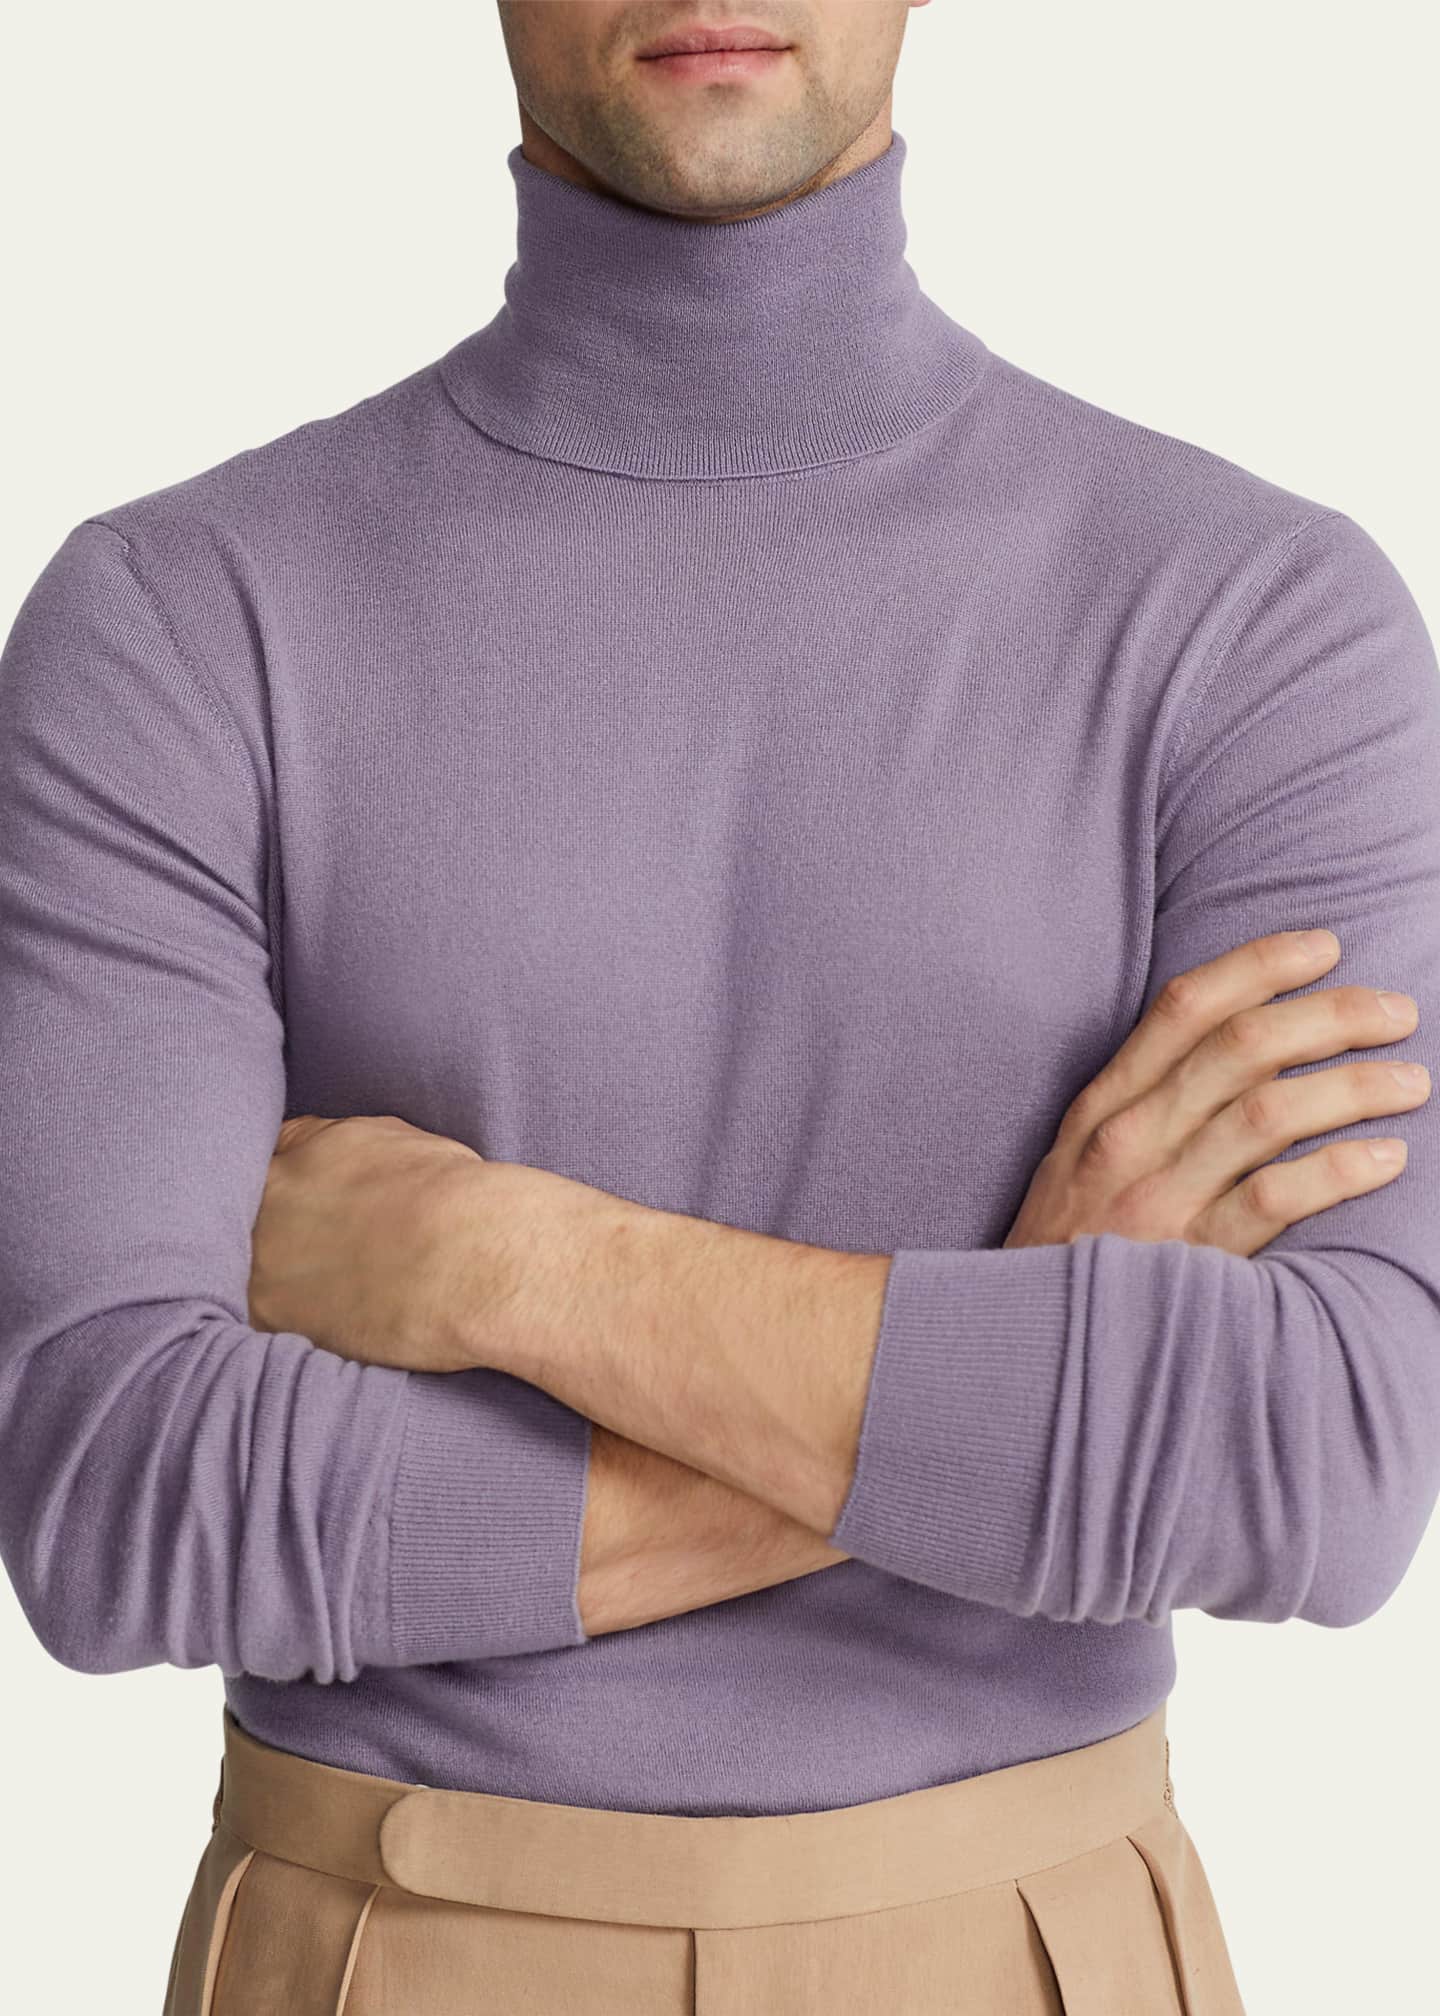 Men's Fine Gauge Cashmere Turtleneck Sweater